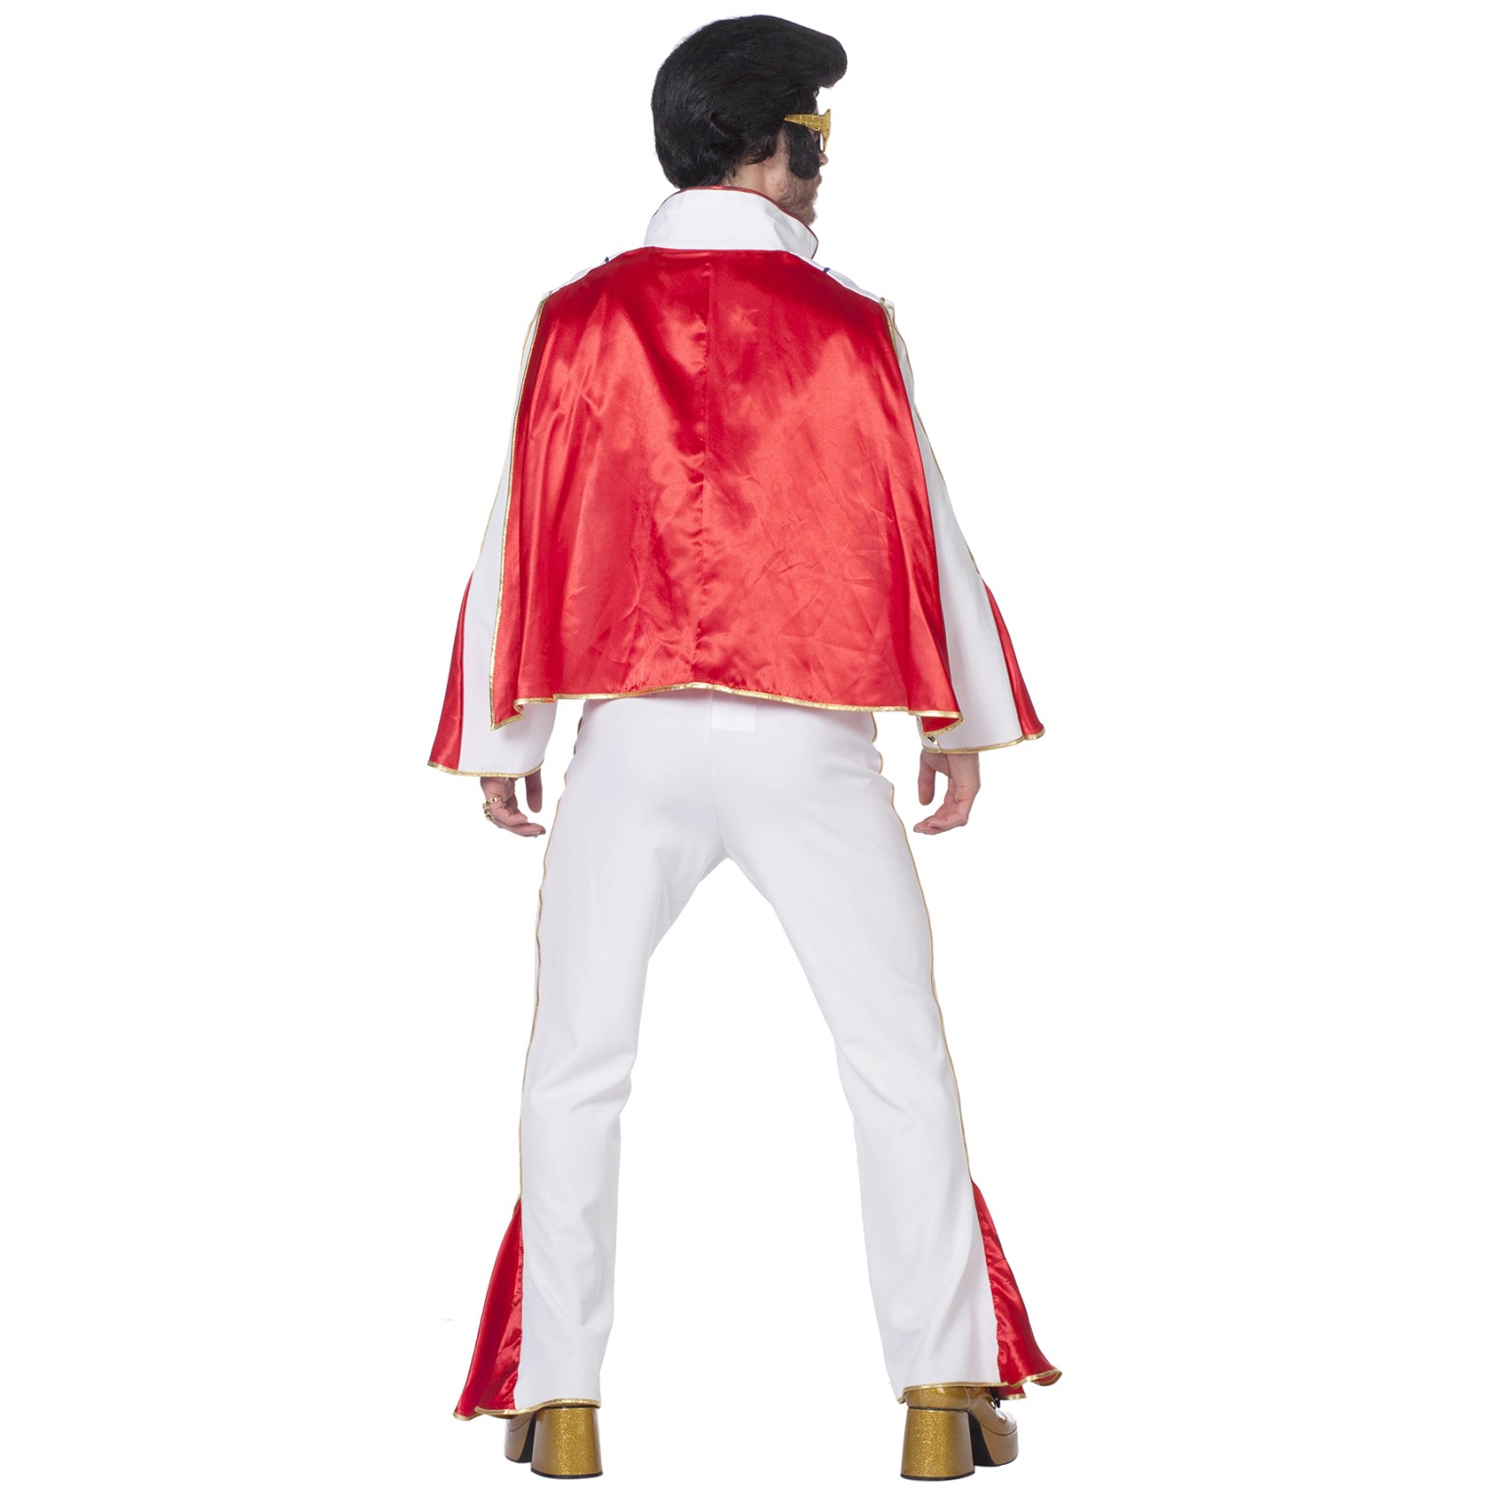 Herren-Kostüm Mr. Elvis, weiß/rot, Gr. 50-52 Bild 3